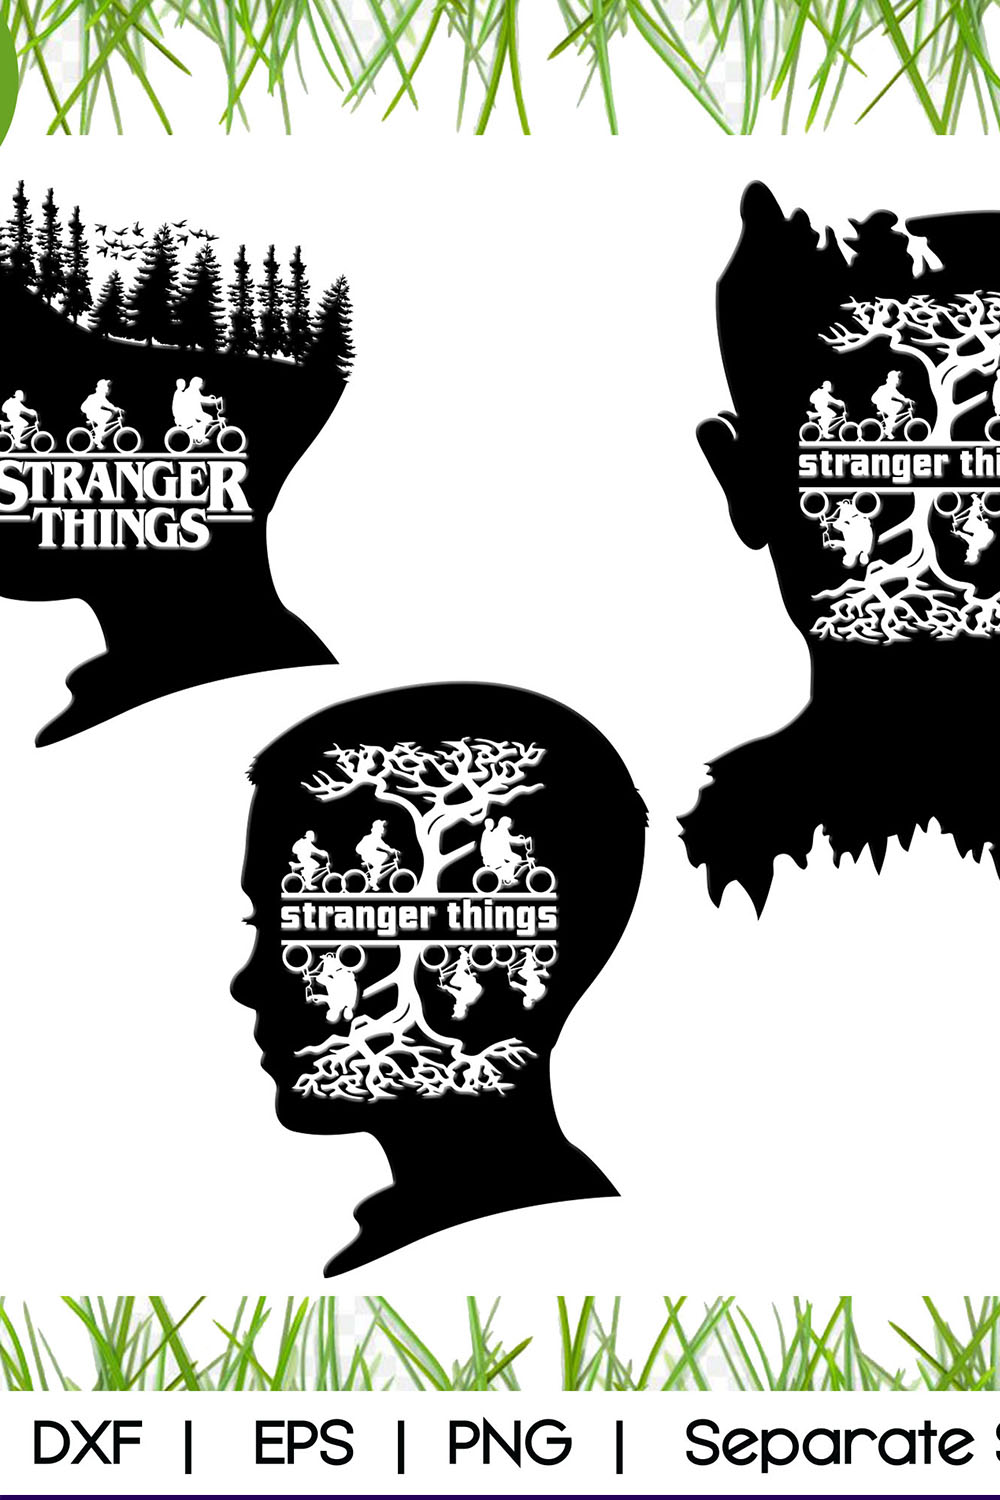 Stranger Things SVG pinterest image.